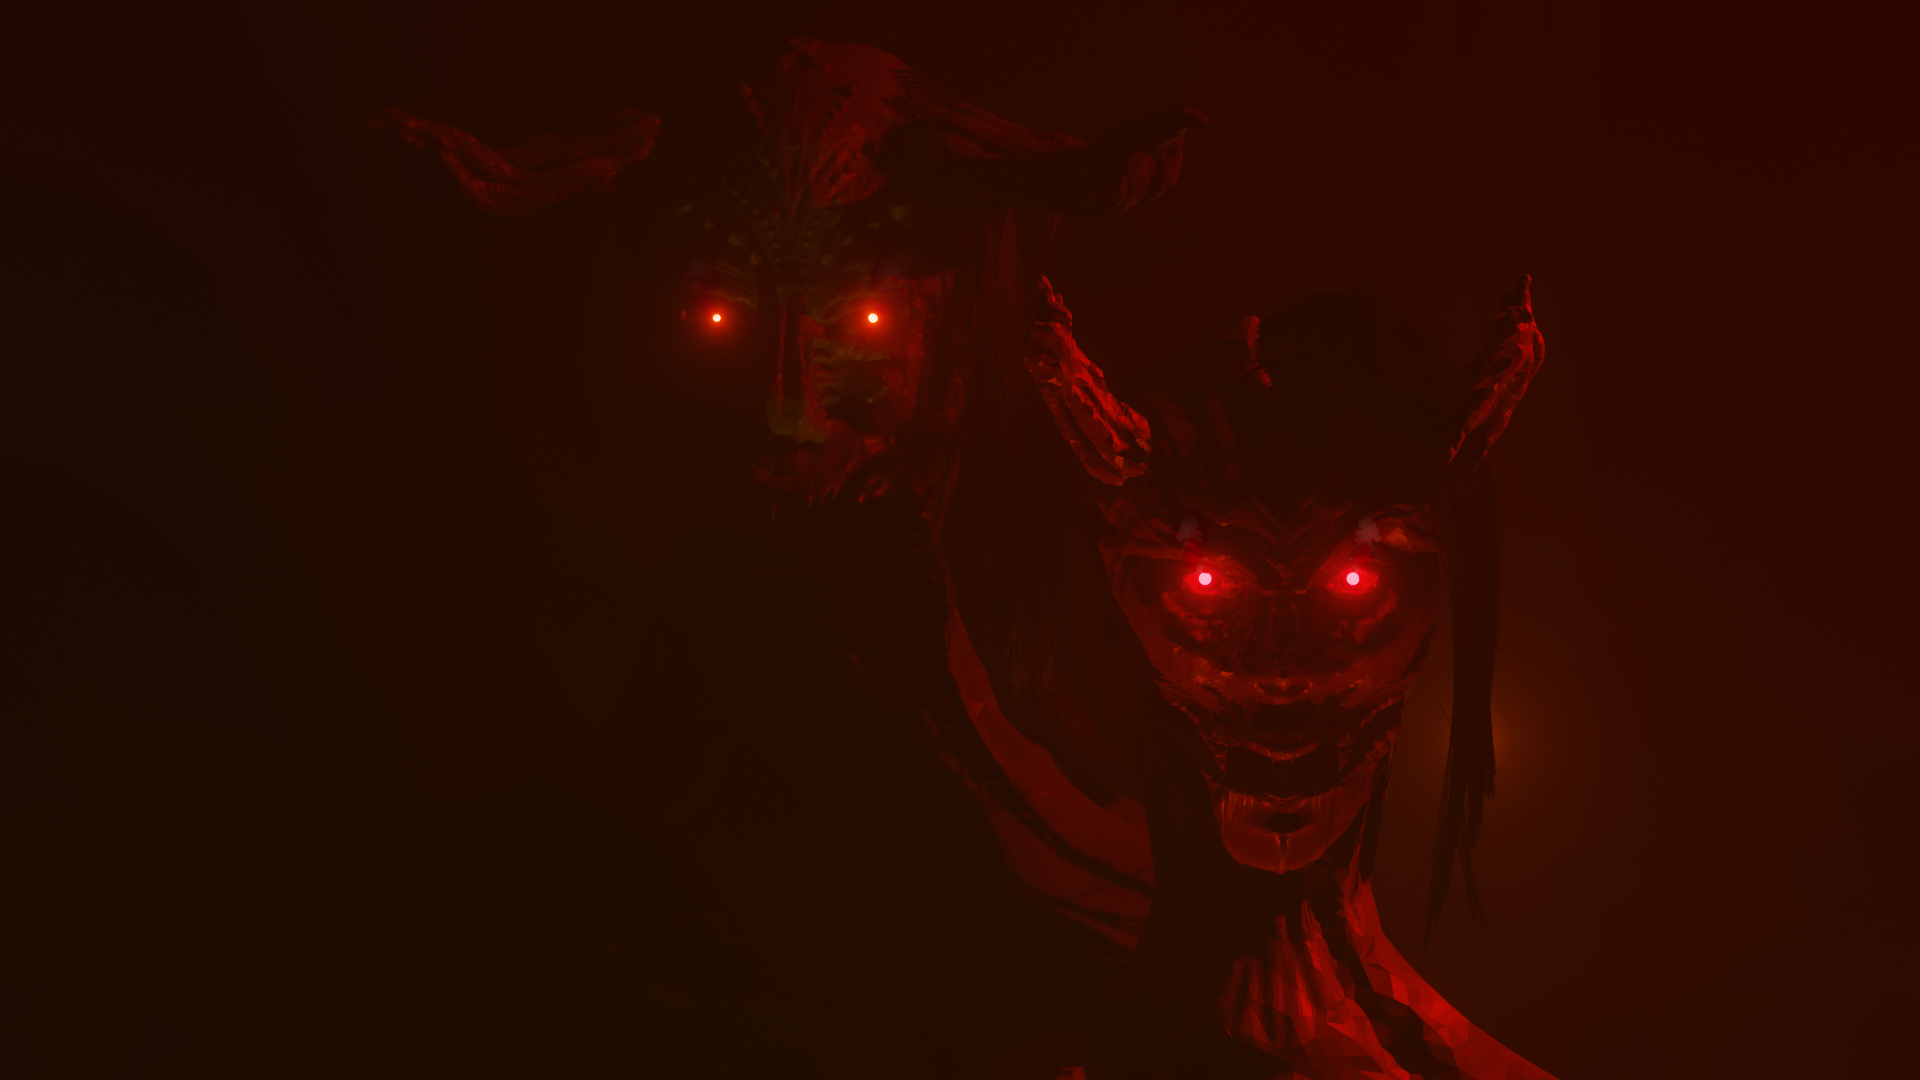 Demons in Blender cycles render image